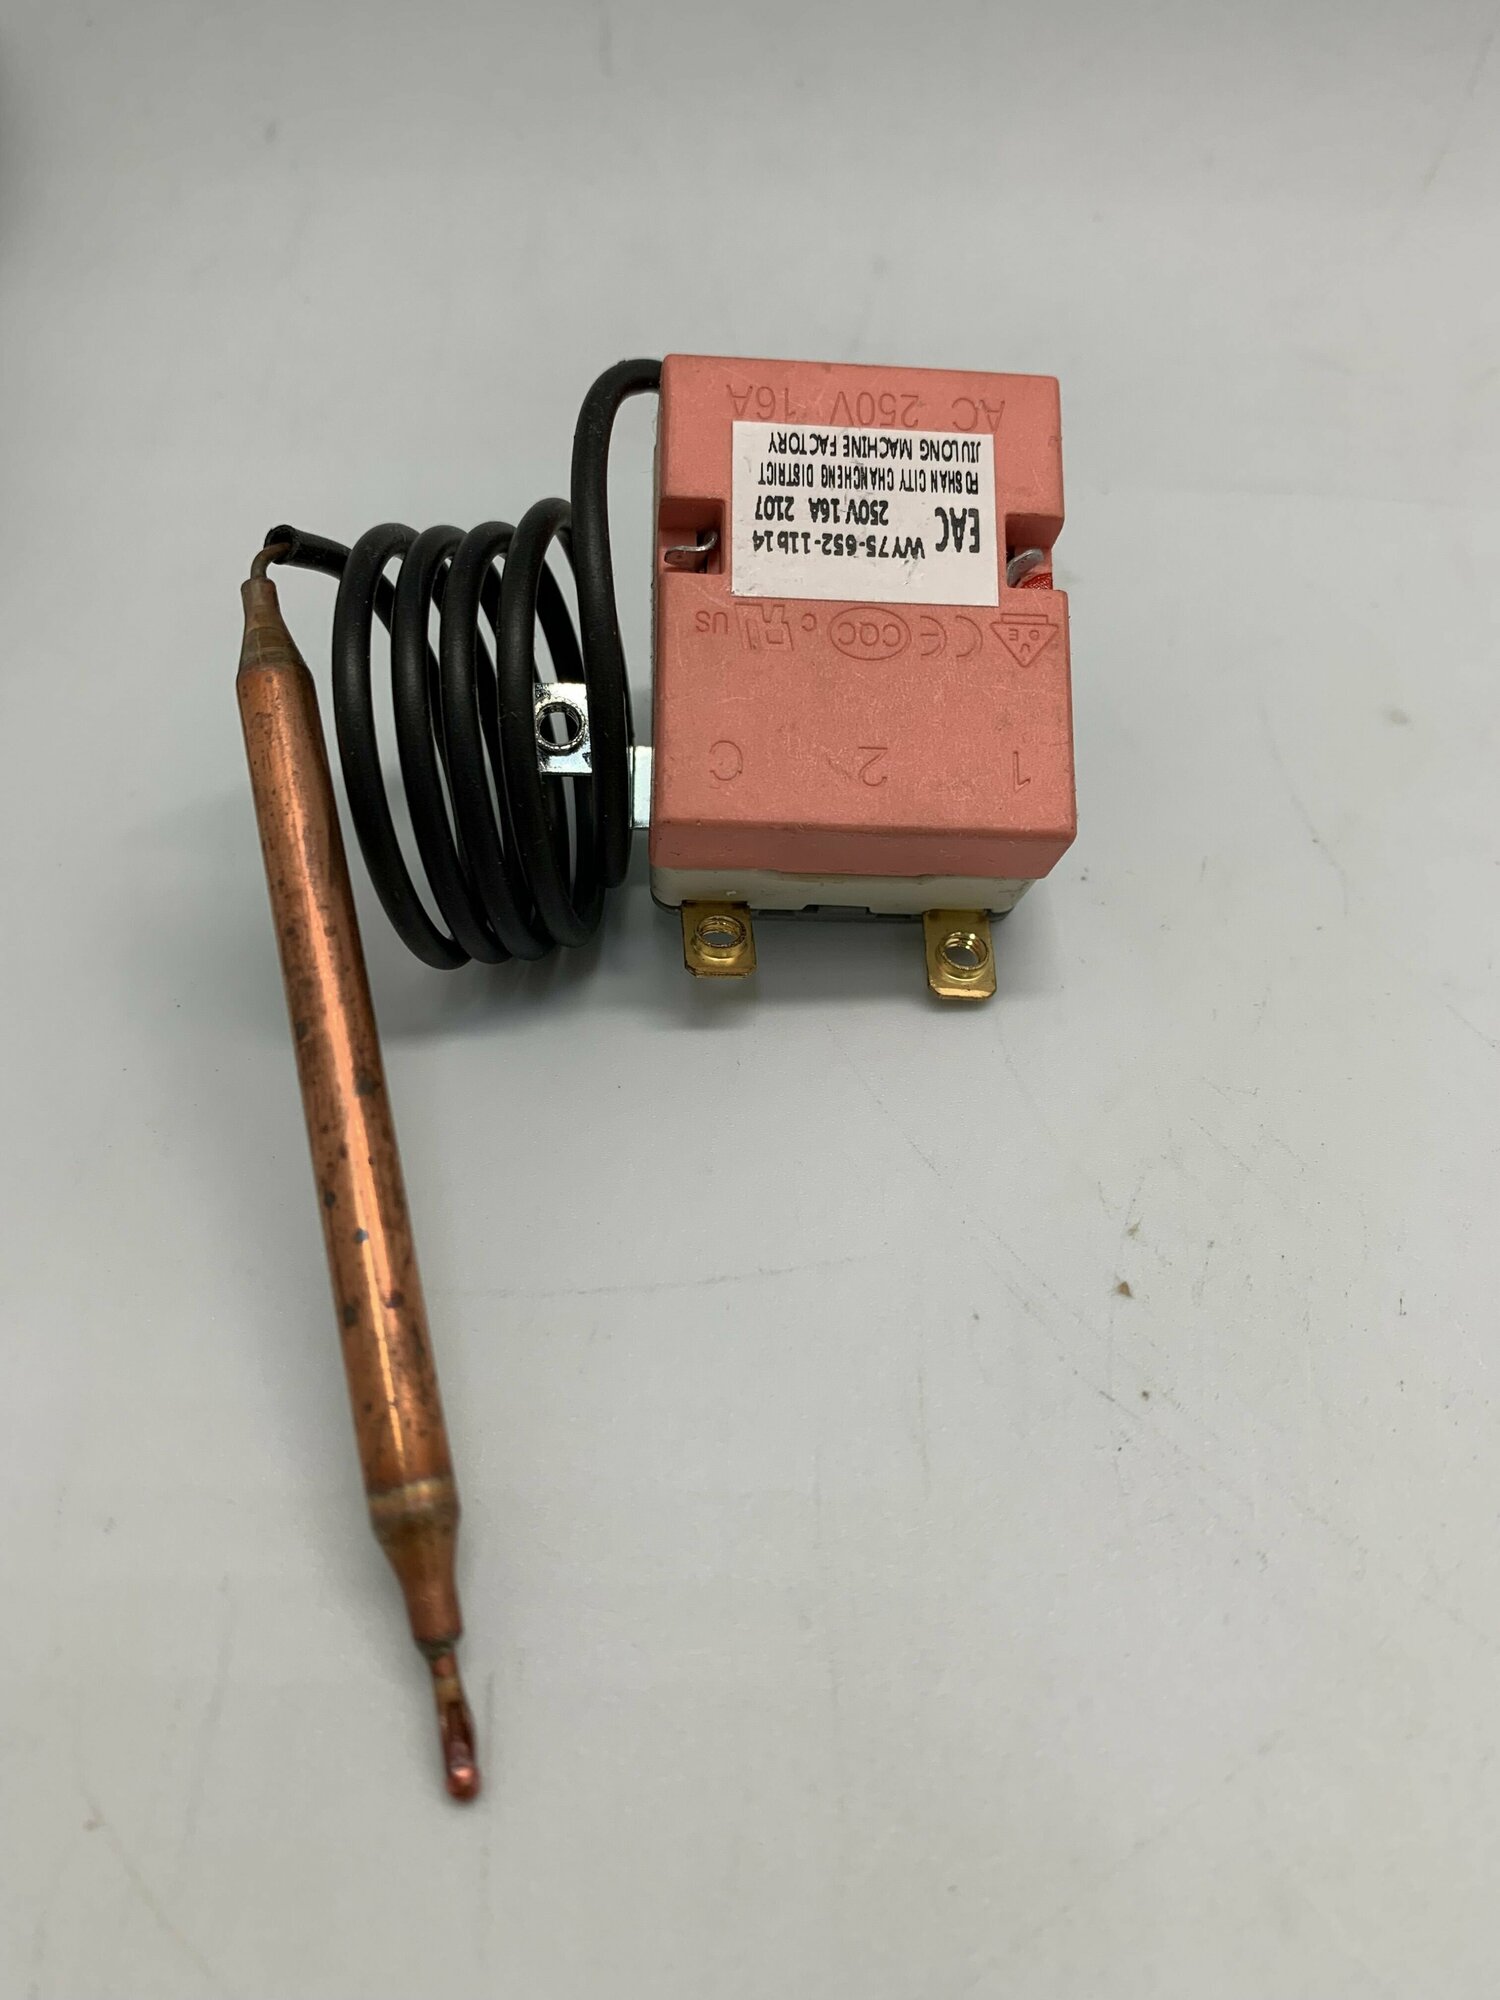 Термостат водонагревателя WY75-A14 77C клемм 2-M4